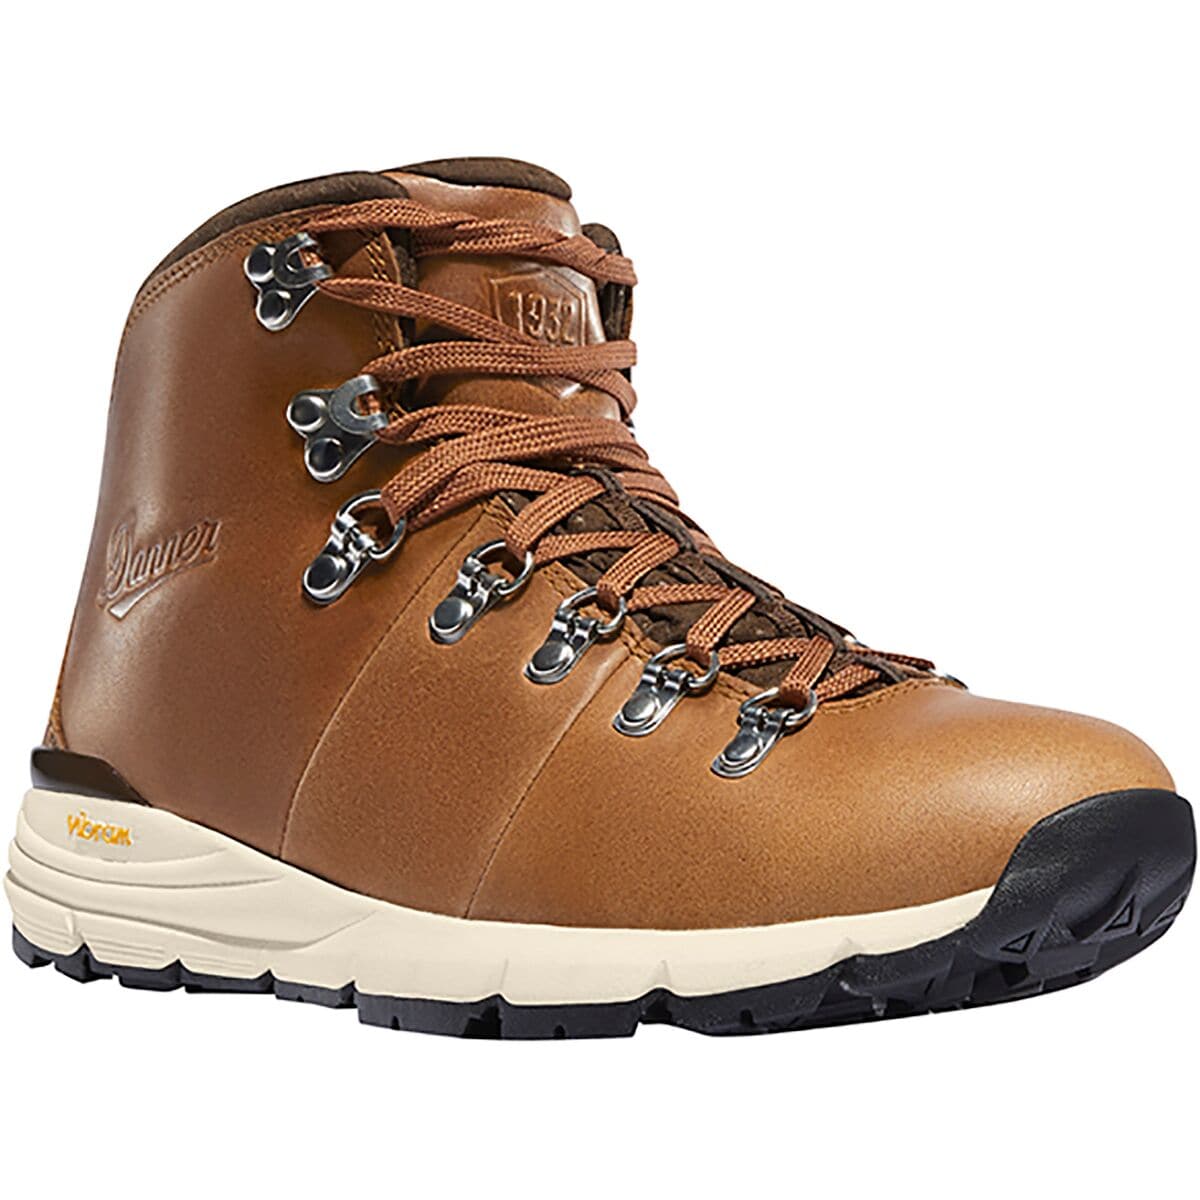 Danner Mountain 600 Full Grain Leather Hiking Boot - Women's